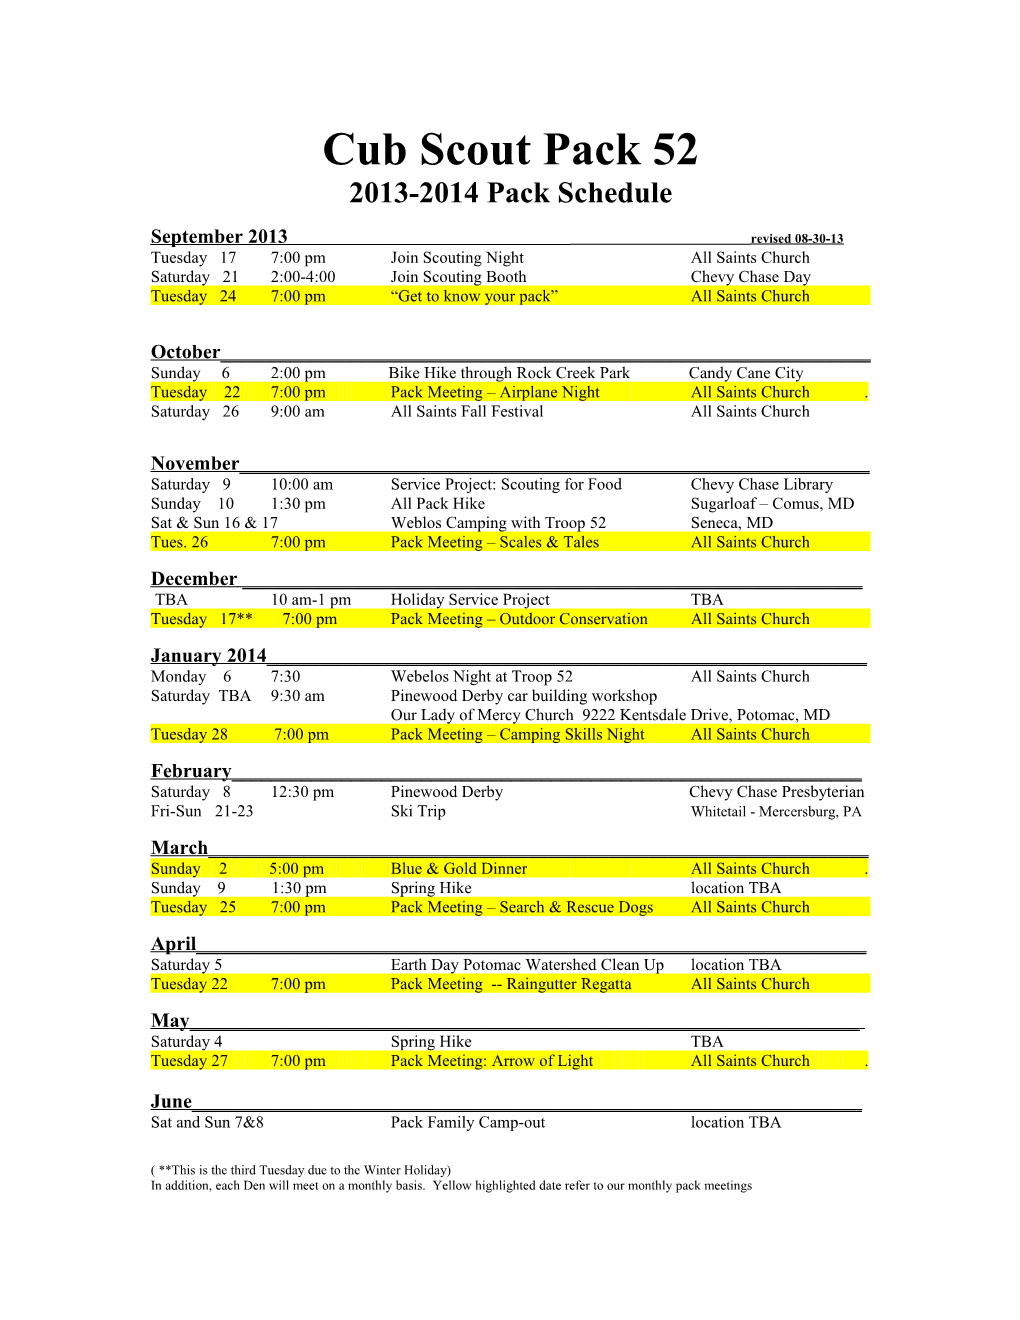 Cub Scout Pack 52 2012-2013 Pack Schedule